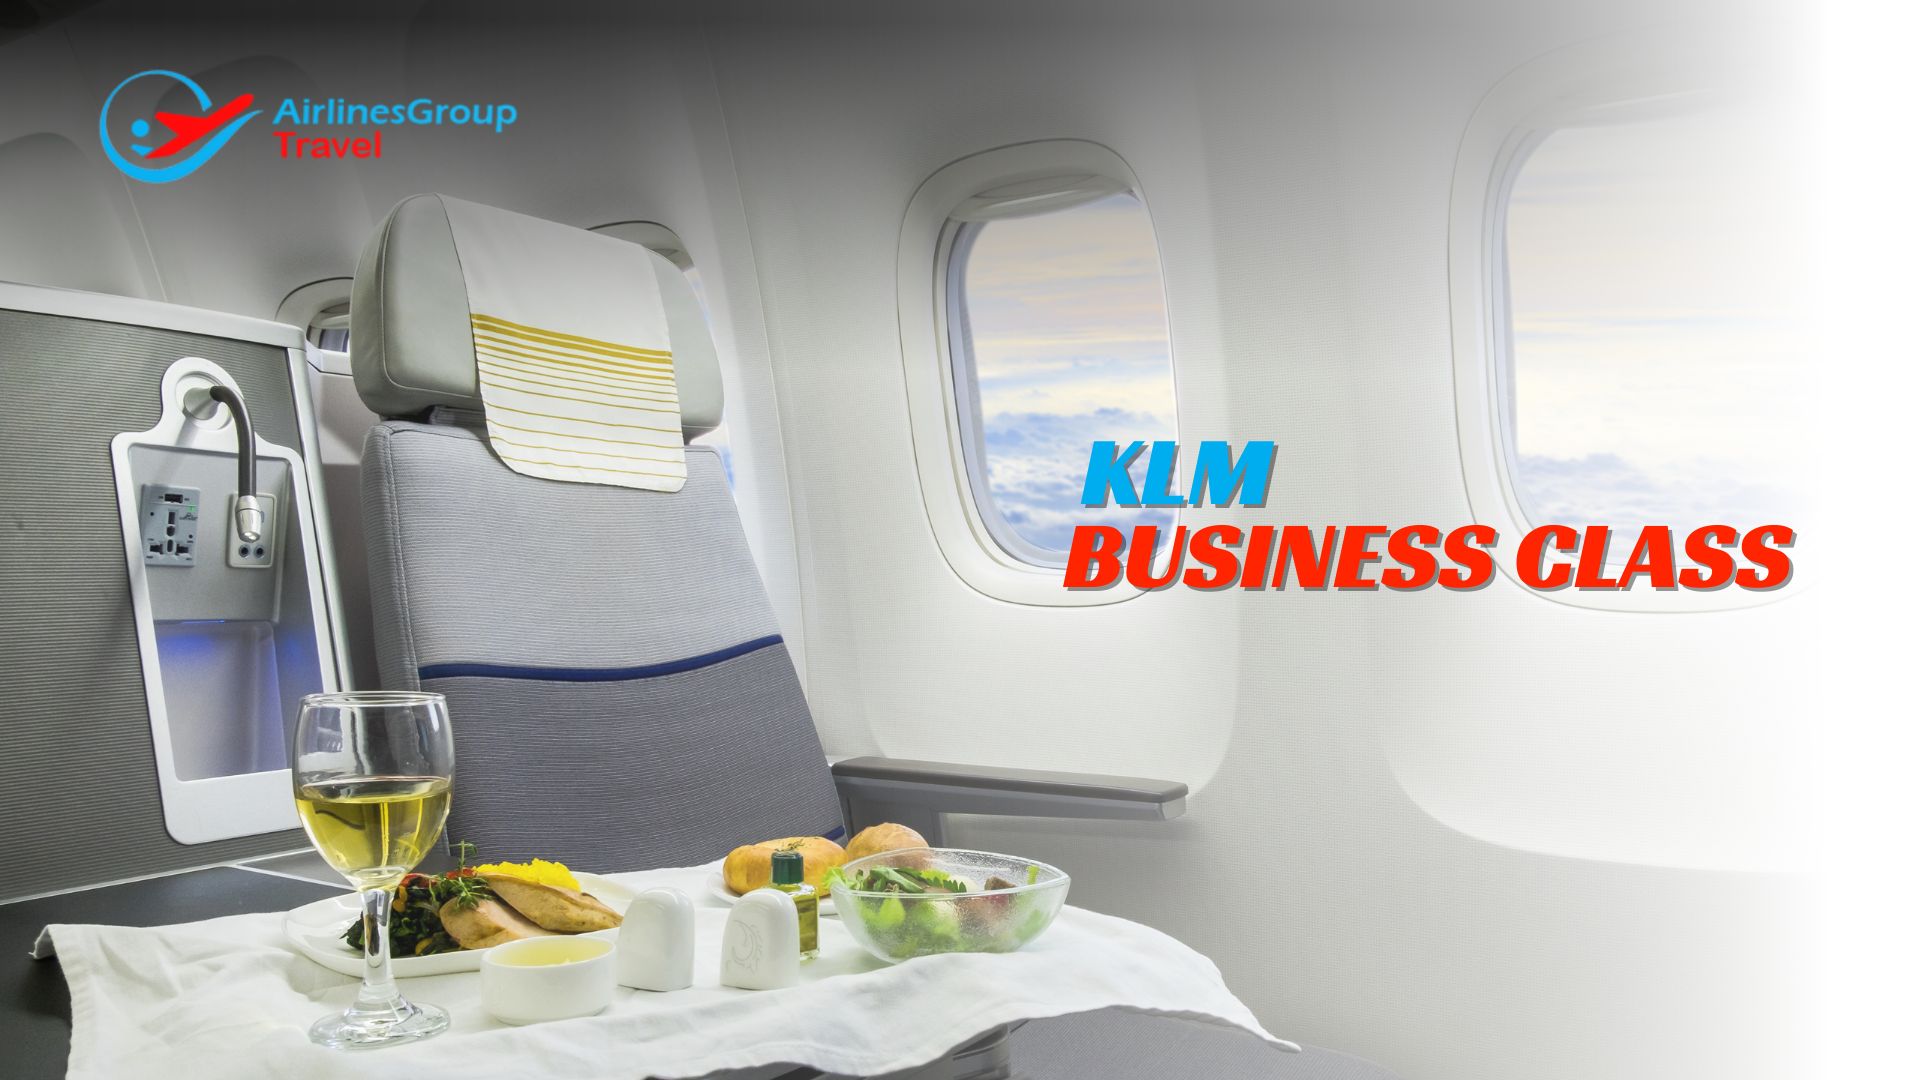 KLM Business Class